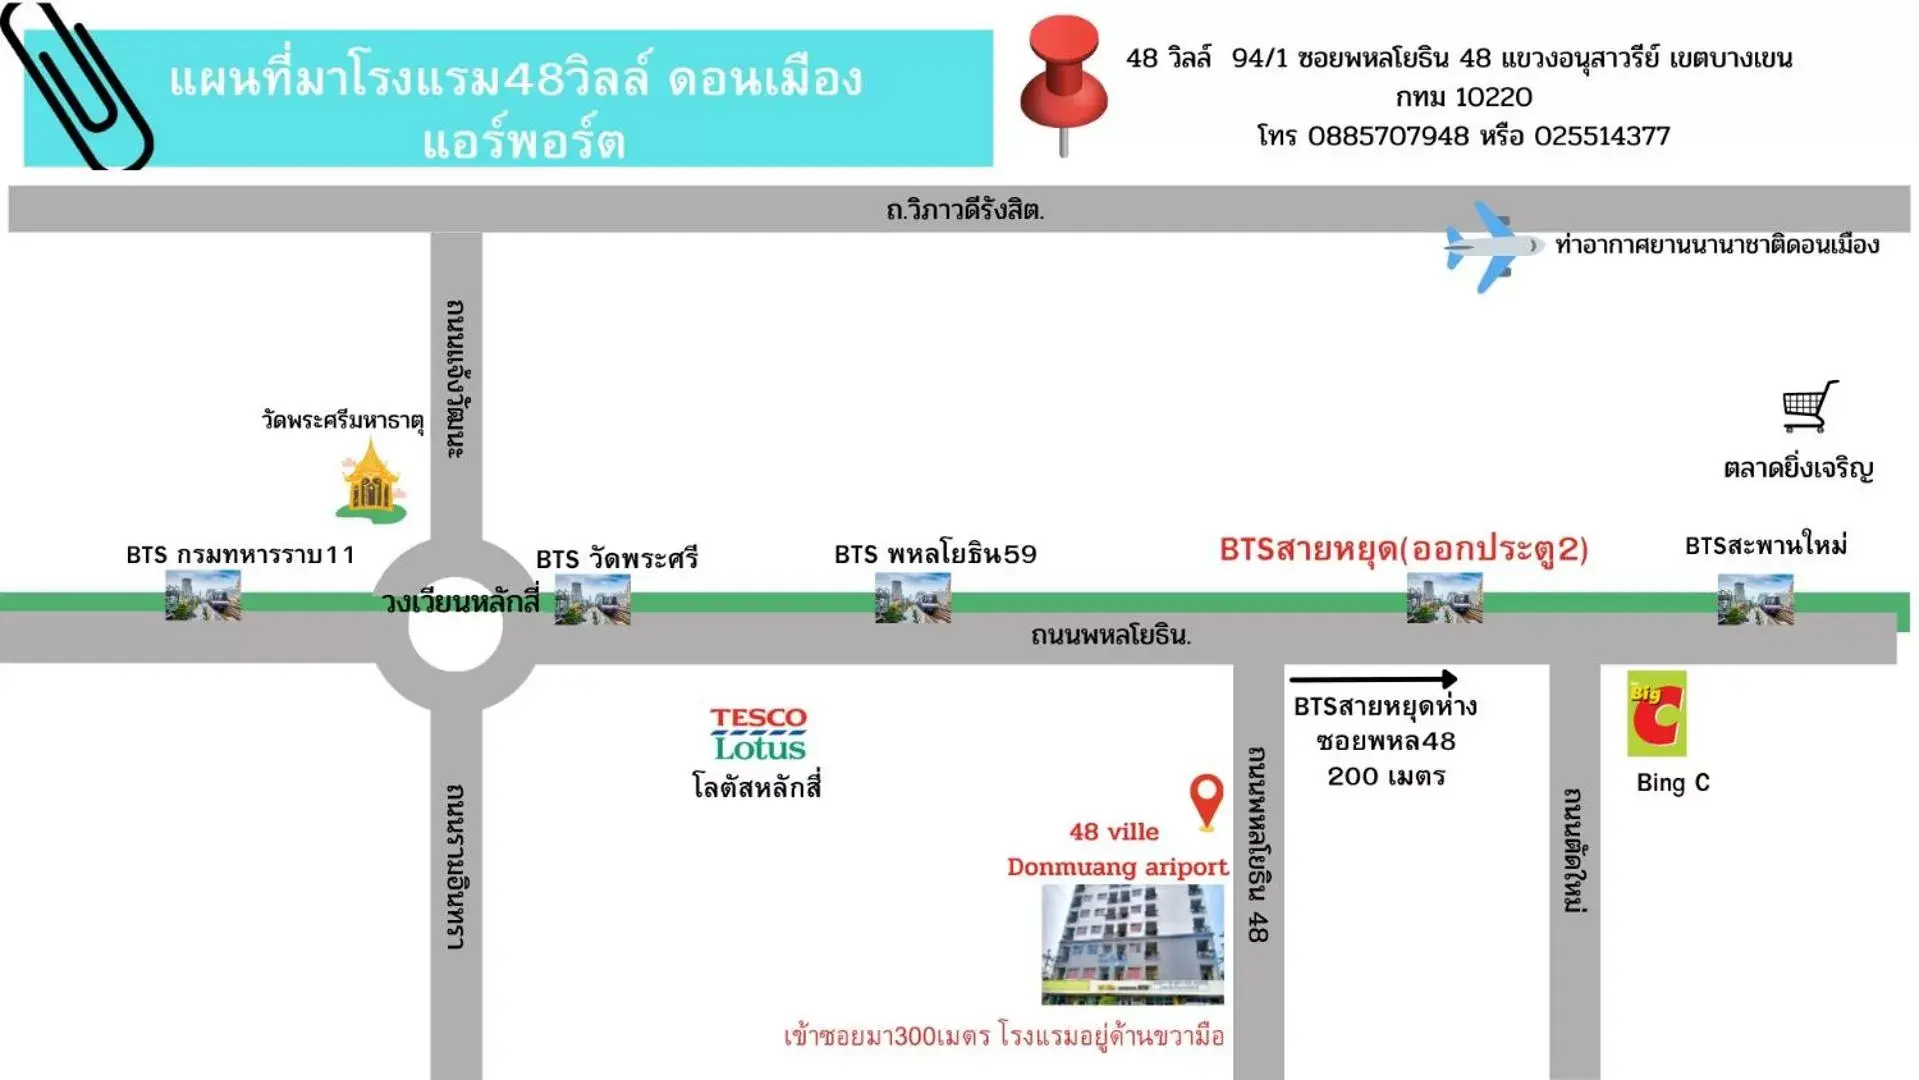 Nearby landmark, Floor Plan in 48 Ville Donmuang Airport